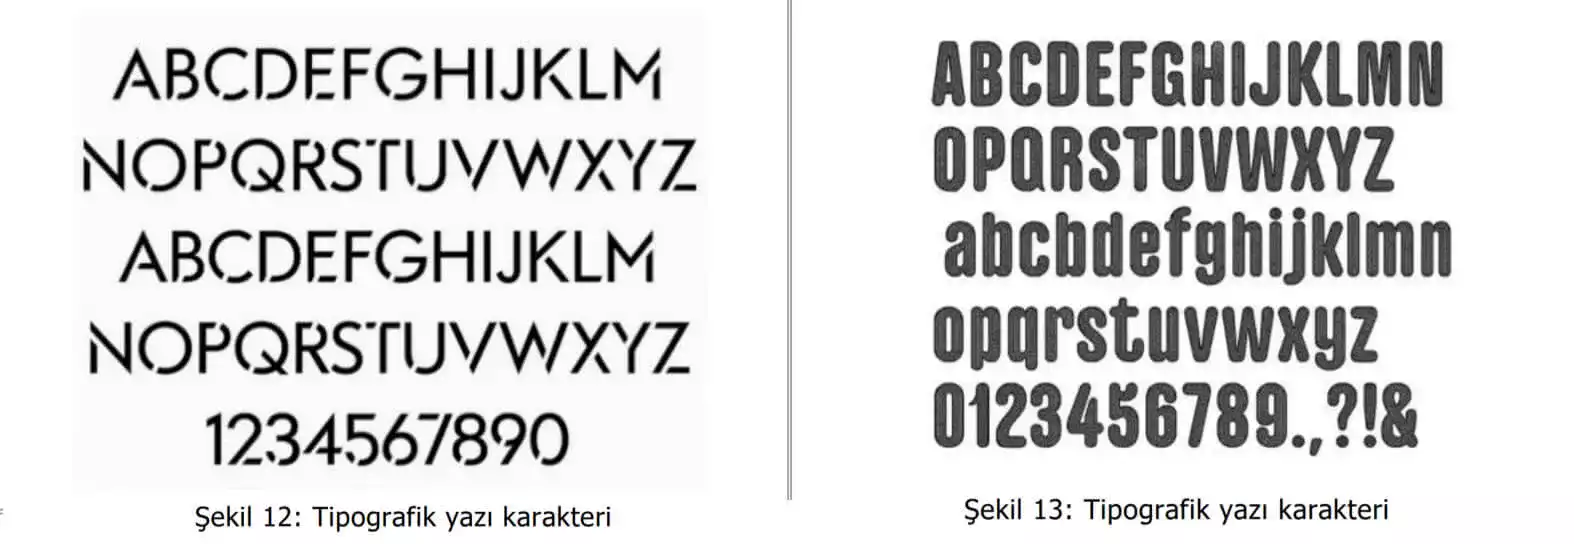 tipografik yazı karakter örnekleri-İzmir Patent